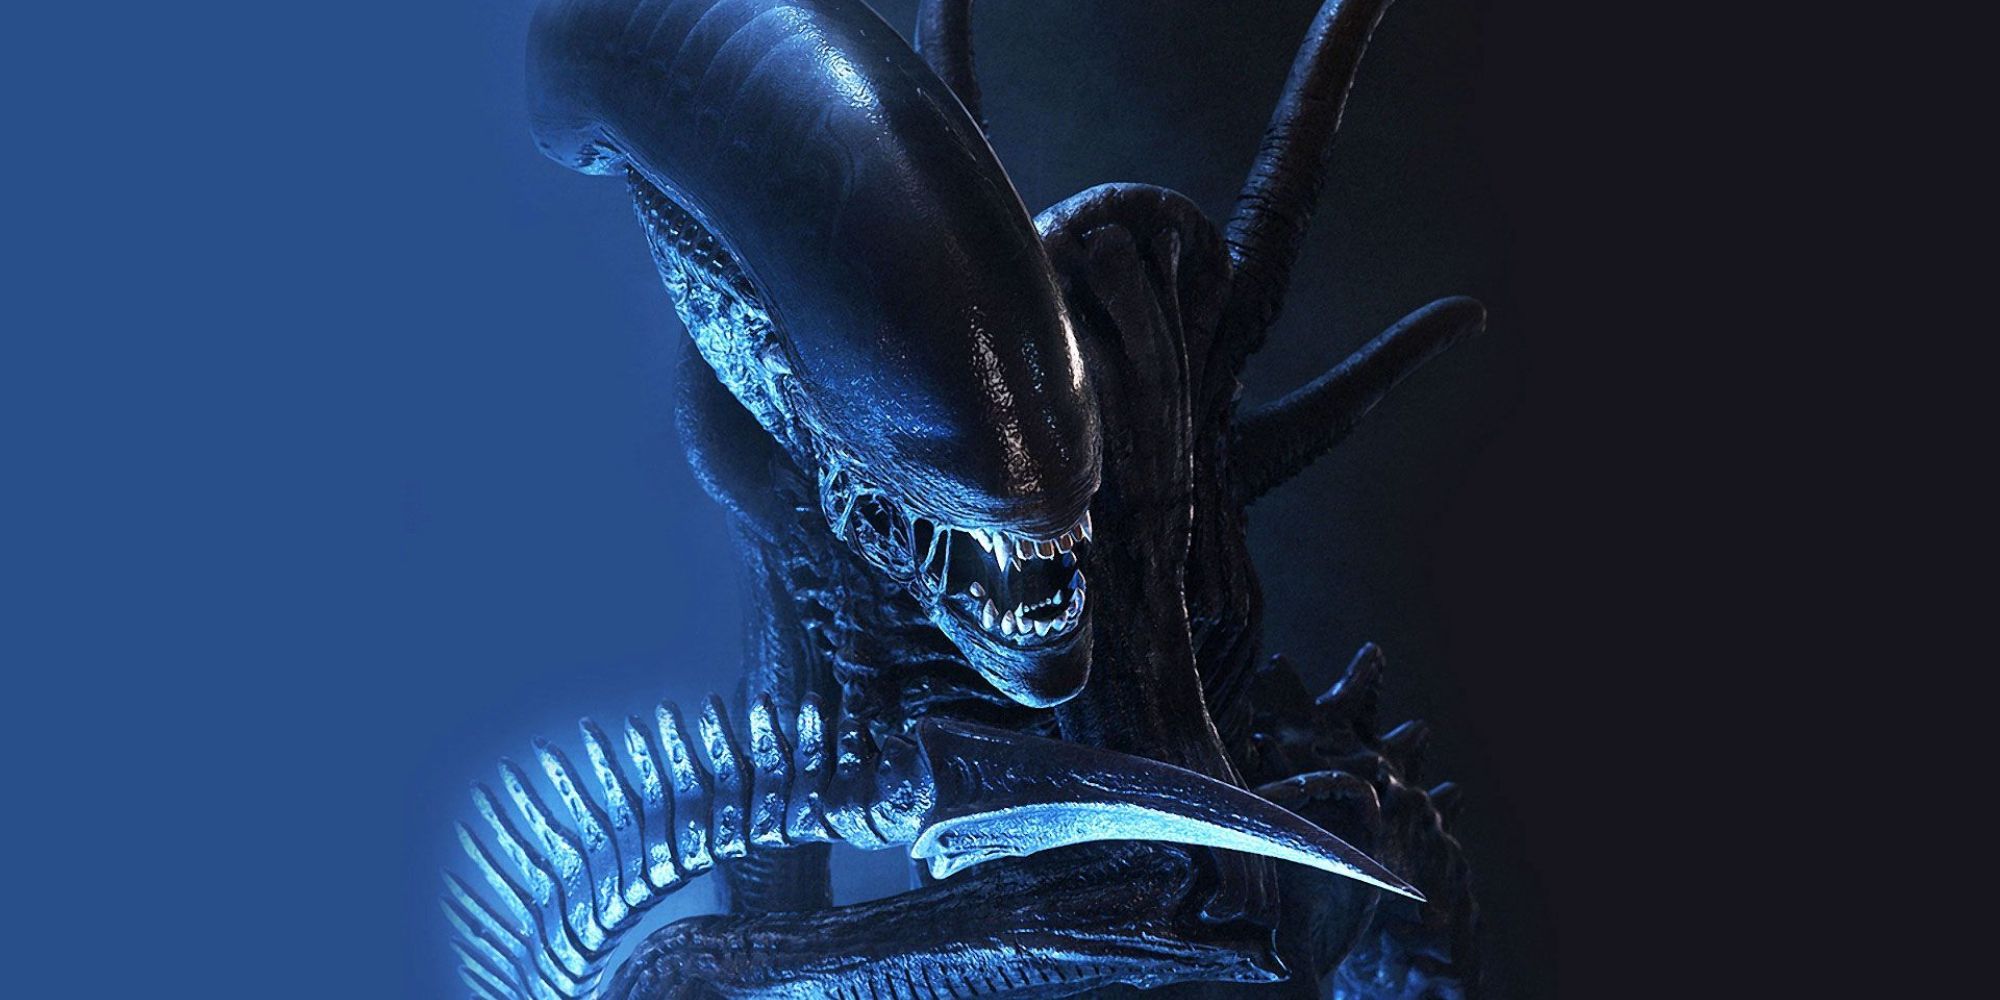 Xenomorph from the Alien franchise